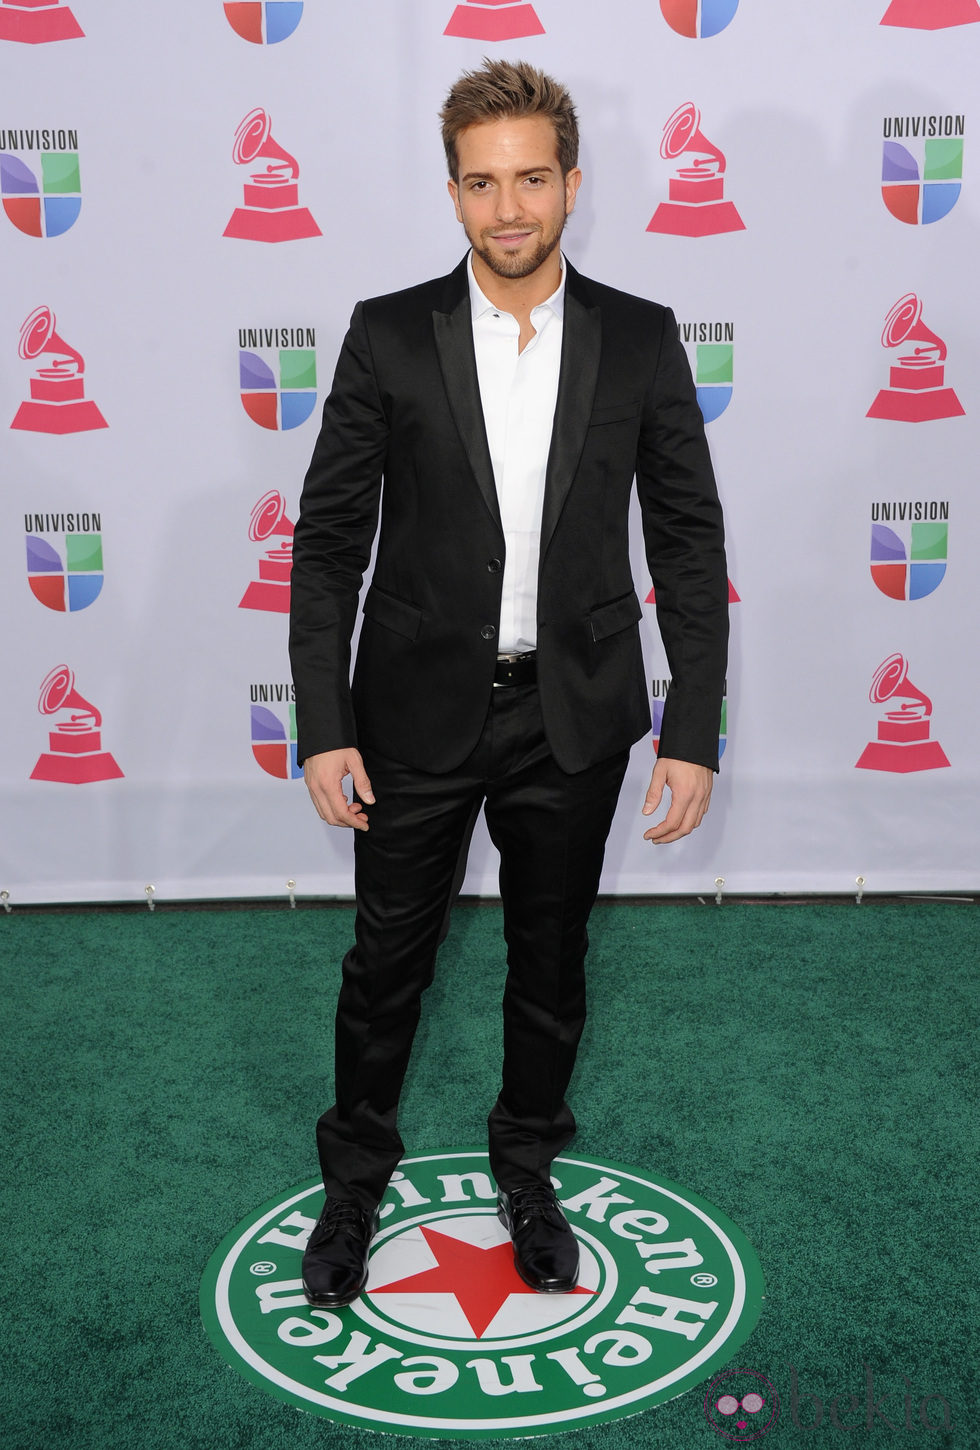 Pablo Alborán en los Grammy Latinos 2012